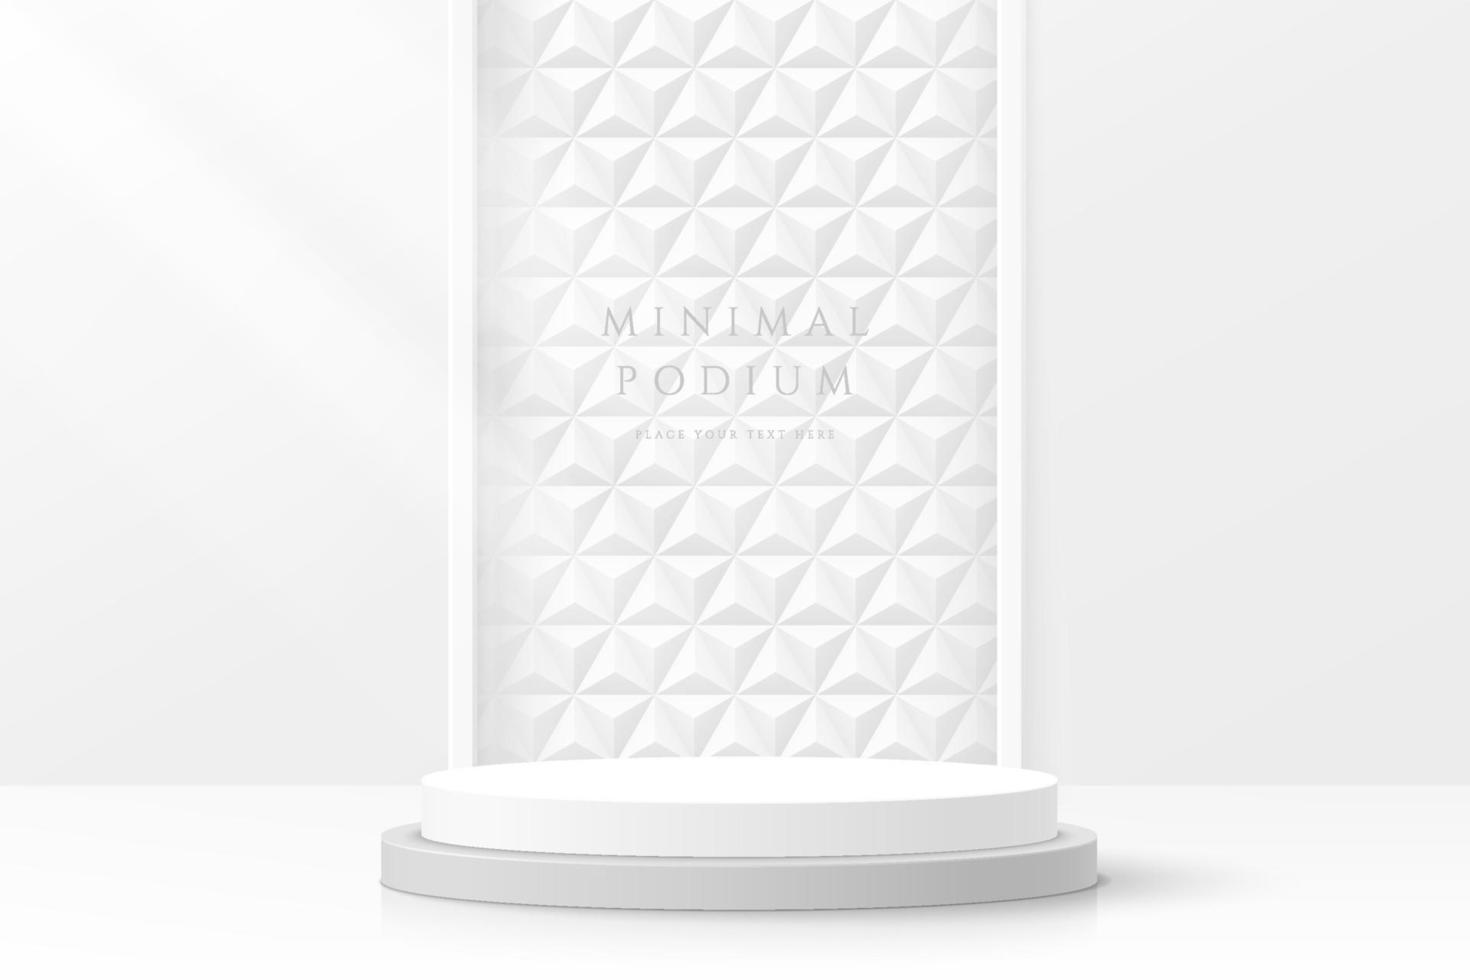 abstracte schone witte 3d ruimte met realistisch wit cilindervoetstukpodium en geometrische patroonachtergrond. minimale scène voor weergave van mockupproducten. vector geometrische vormen ontwerp. podium vitrine.